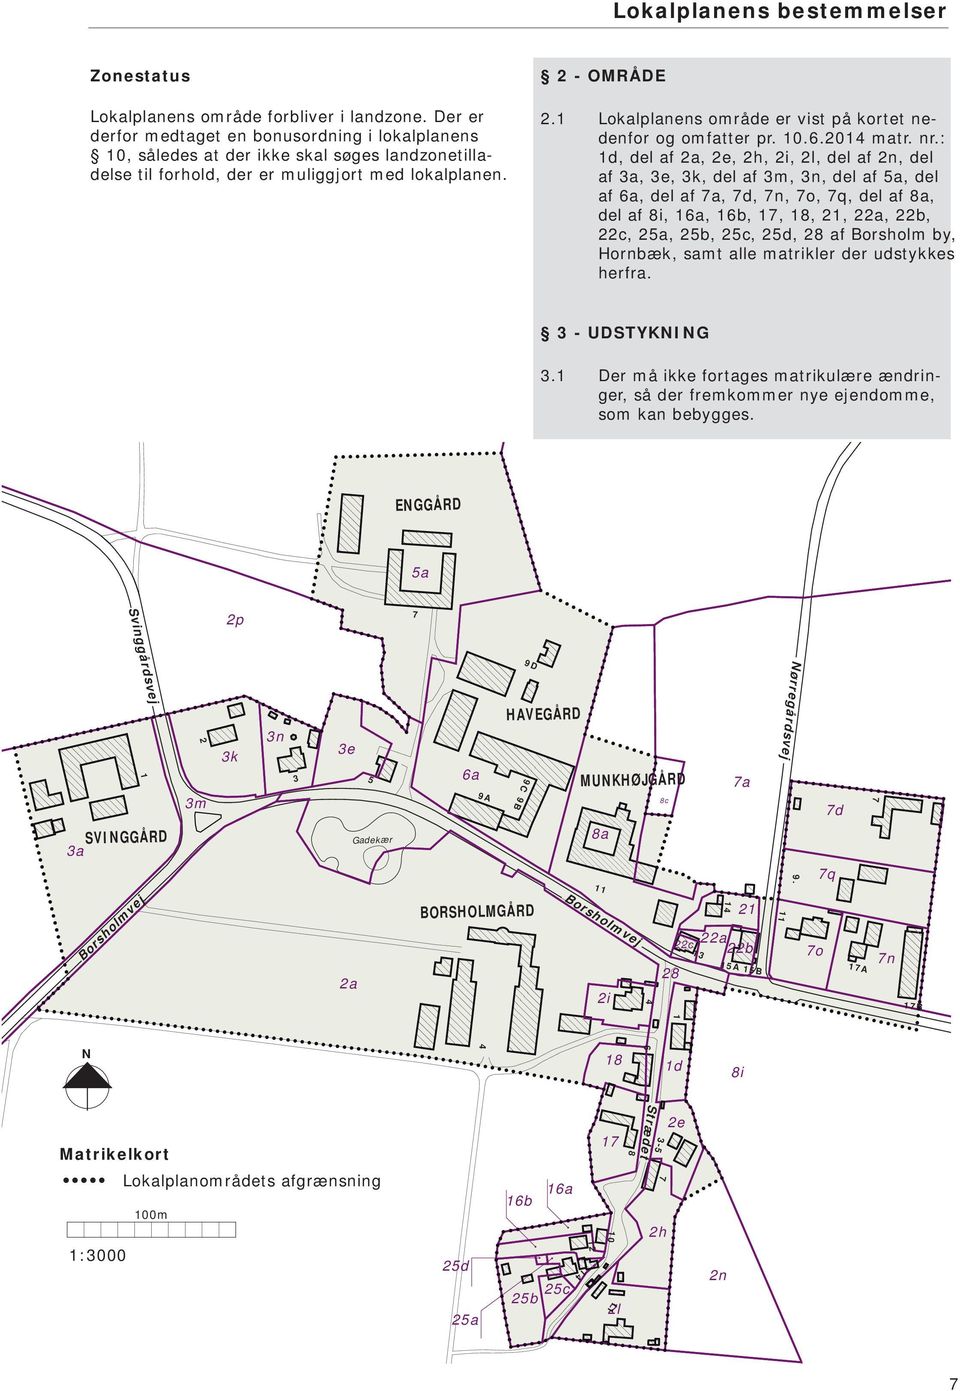 1 Lokalplanens område er vist på kortet nedenfor og omfatter pr. 10.6.2014 matr. nr.